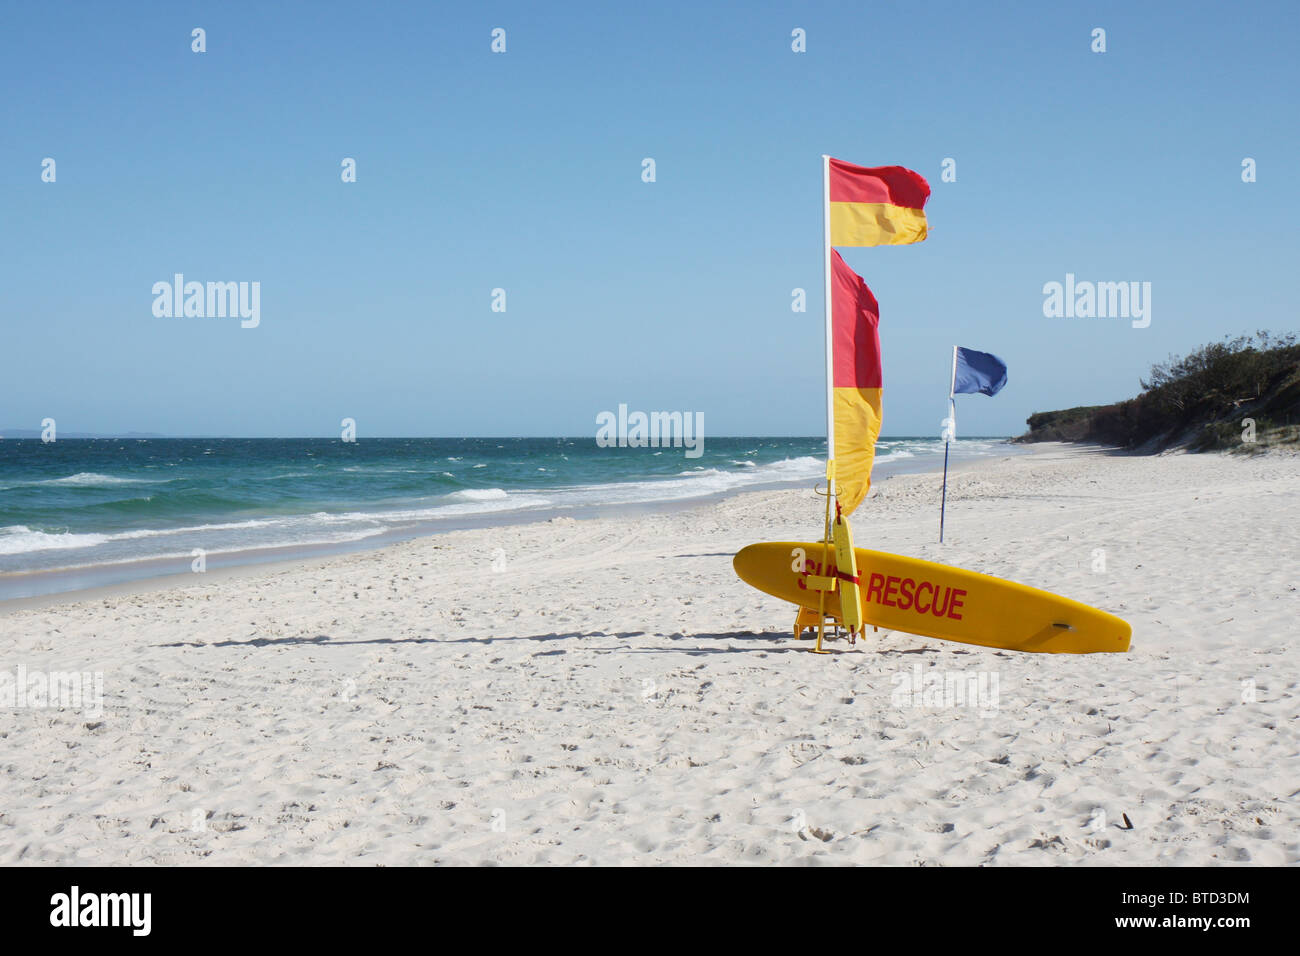 Australian Beach Surf Rescue and Flag on a sunny beach Stock Photo